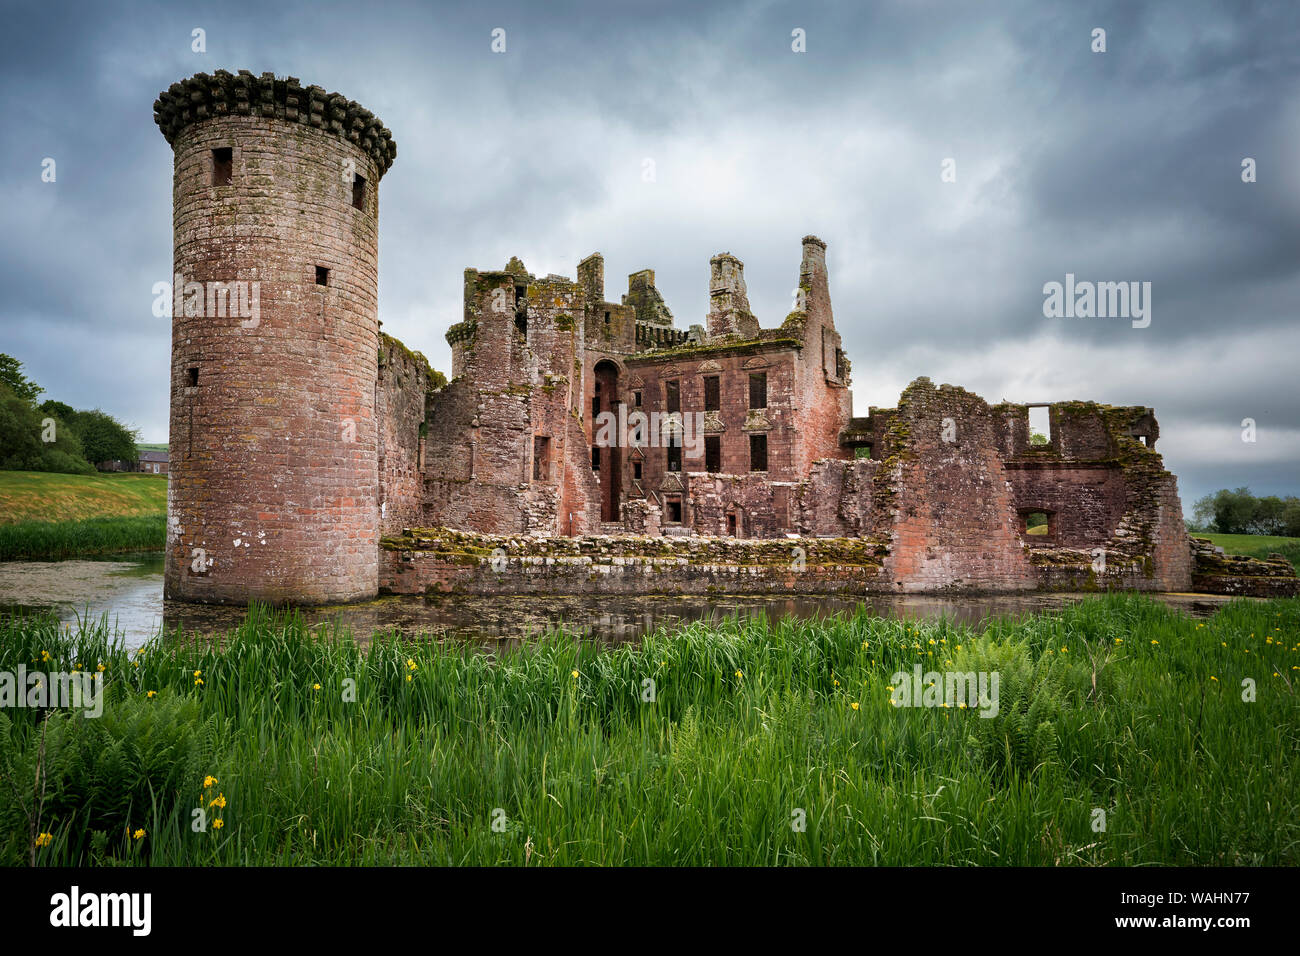 Rückansicht des Wasserschloss dreieckige Caerlaverock Castle in Schottland. Rückwand wurde in der letzten Schlacht mit Bündnispartner Armee im Jahre 1640 zerstört, so dass die C Stockfoto